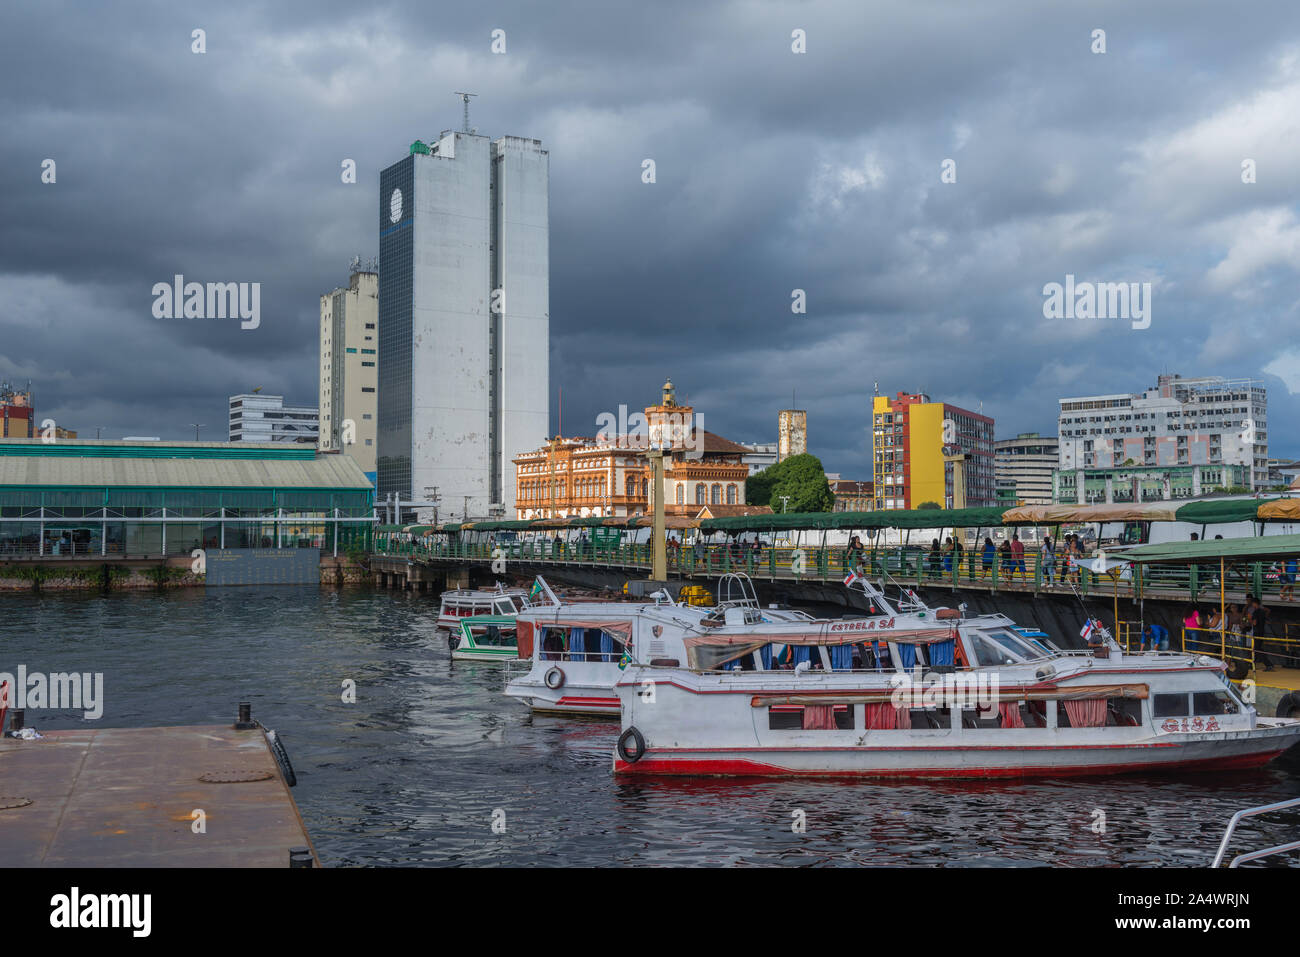 Le Flutante Porto ou flottante avec port pour bateaux de vitesse Amazon tours touristiques, Manaus, l'Amazone, Brésil, Amérique Latine Banque D'Images